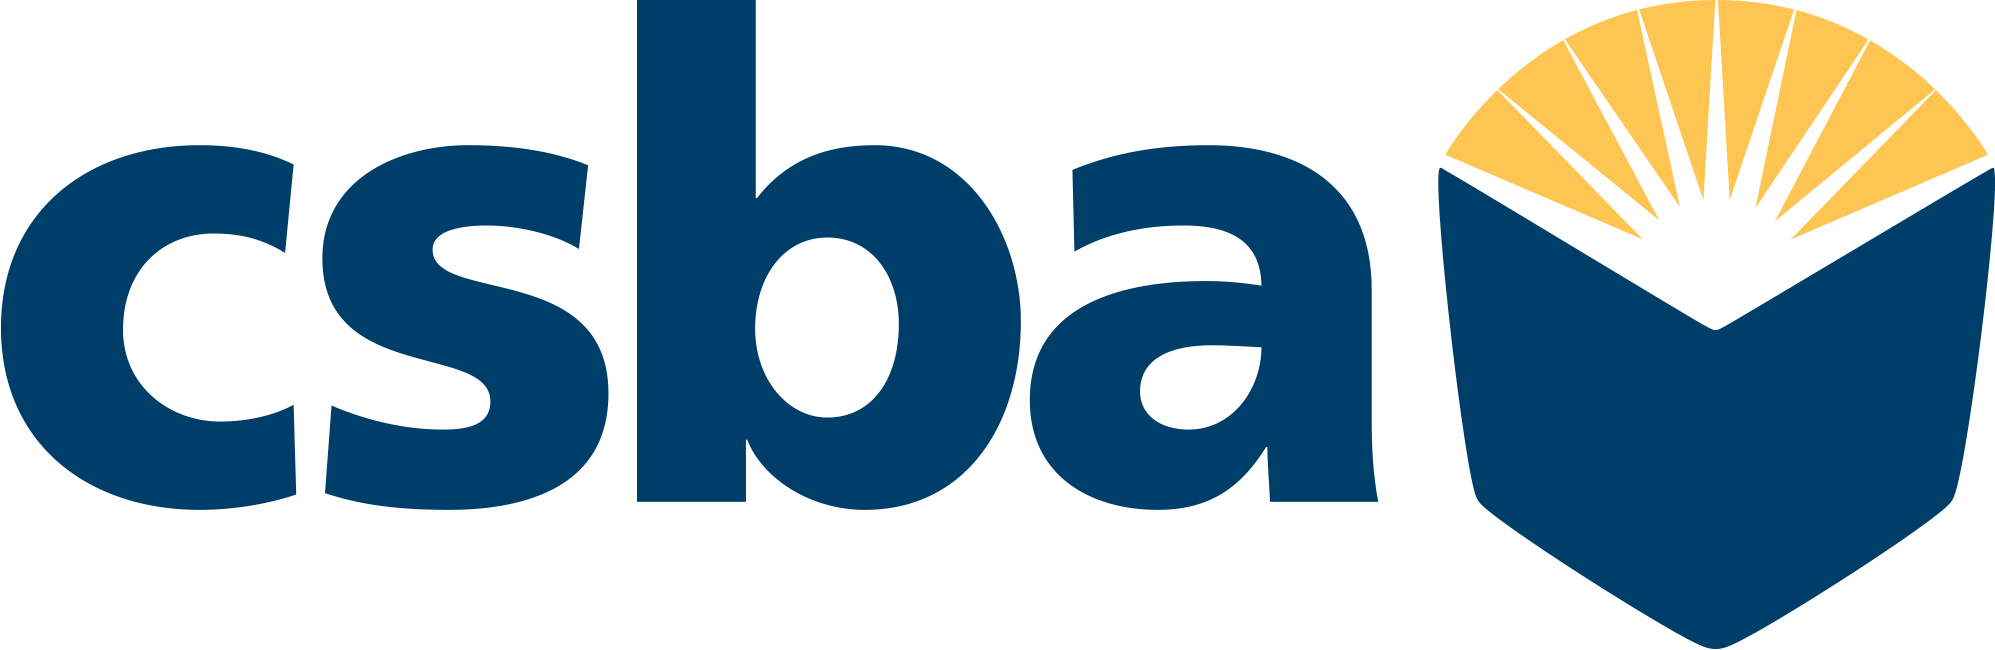 CSBA logo